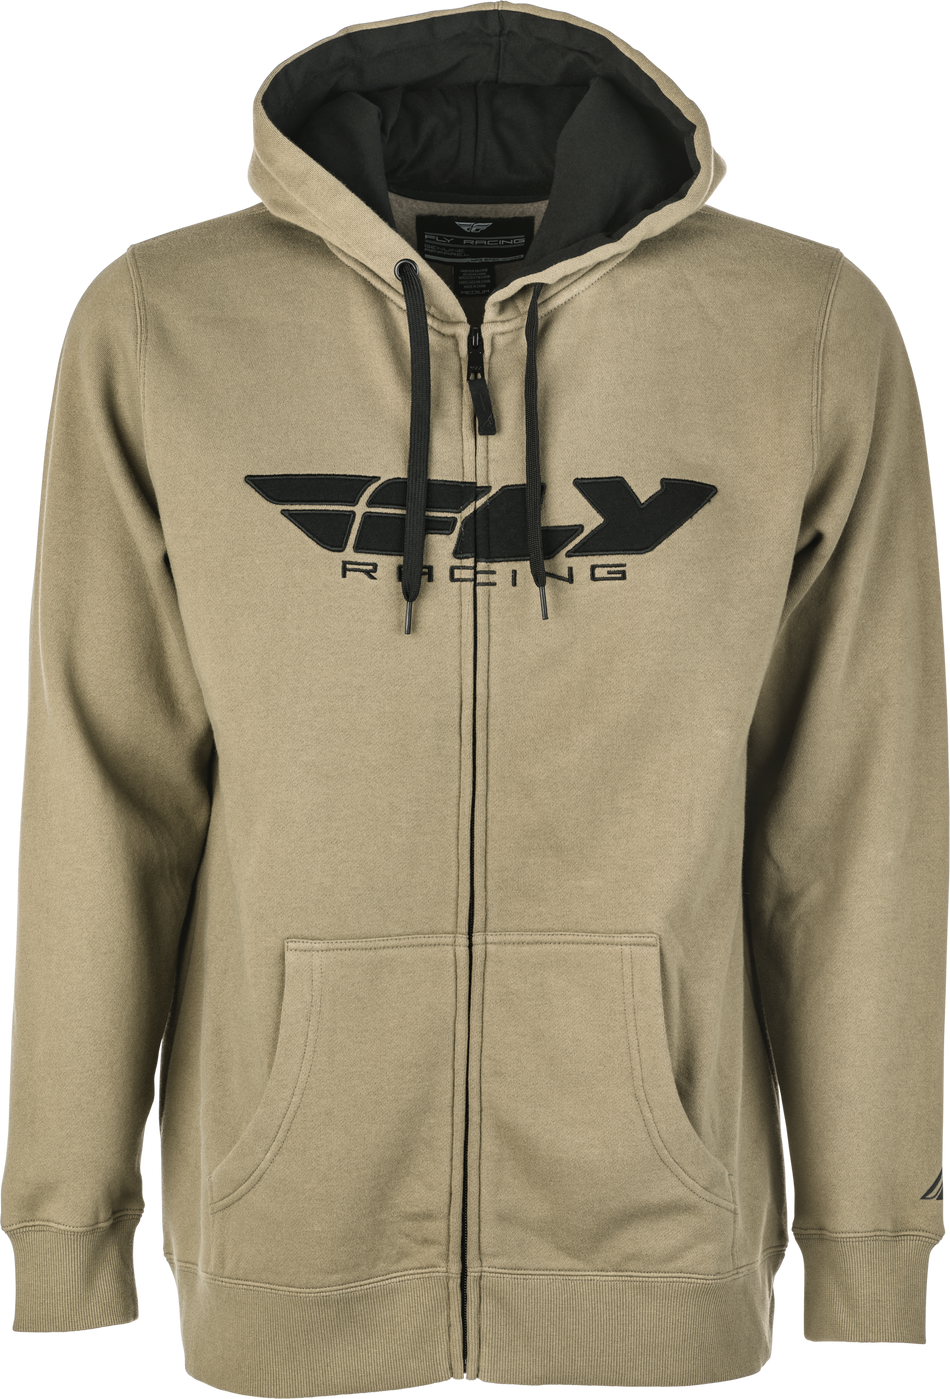 FLY RACING Fly Corporate Zip Up Hoodie Tan/Black Md 354-0194M